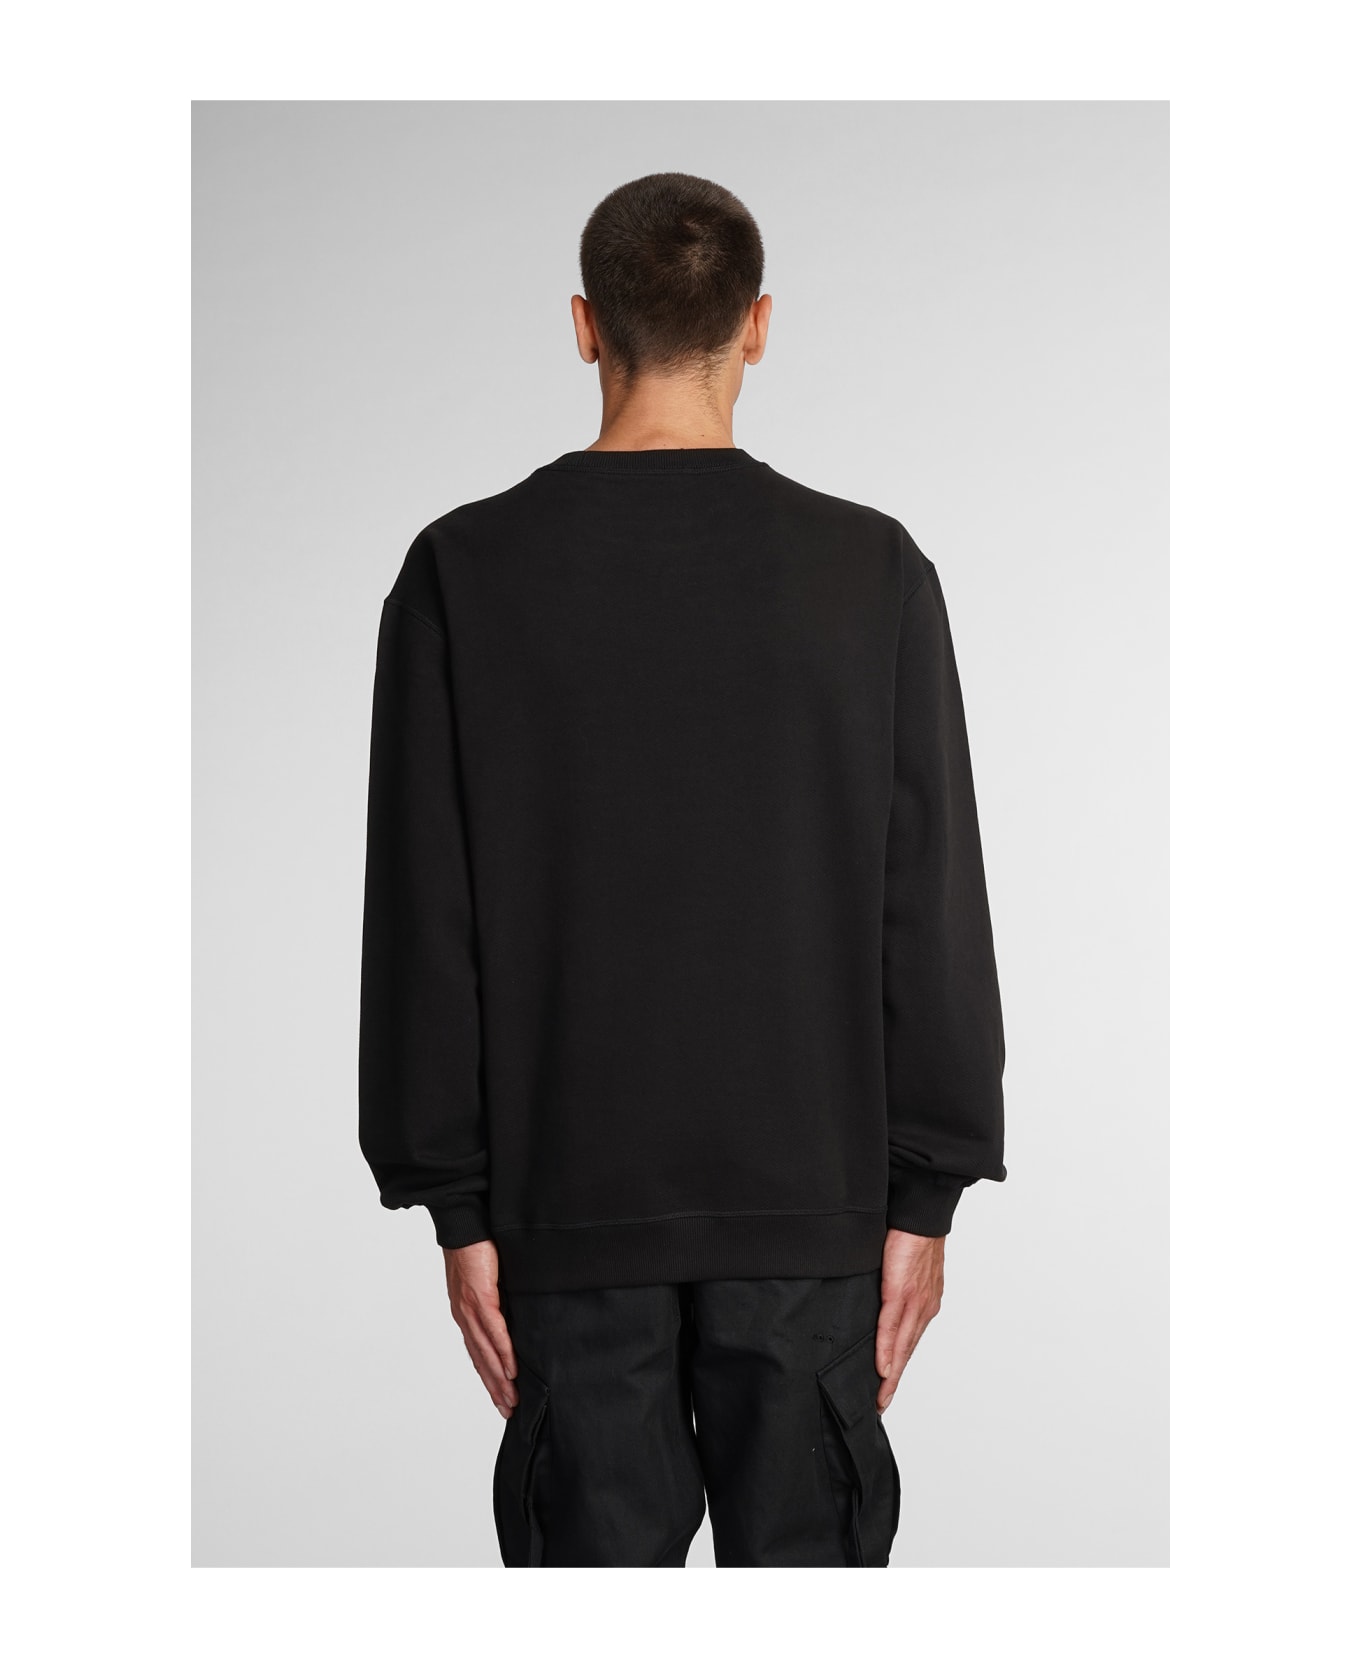 Maharishi Miltype Sweatshirt In Black Cotton - black